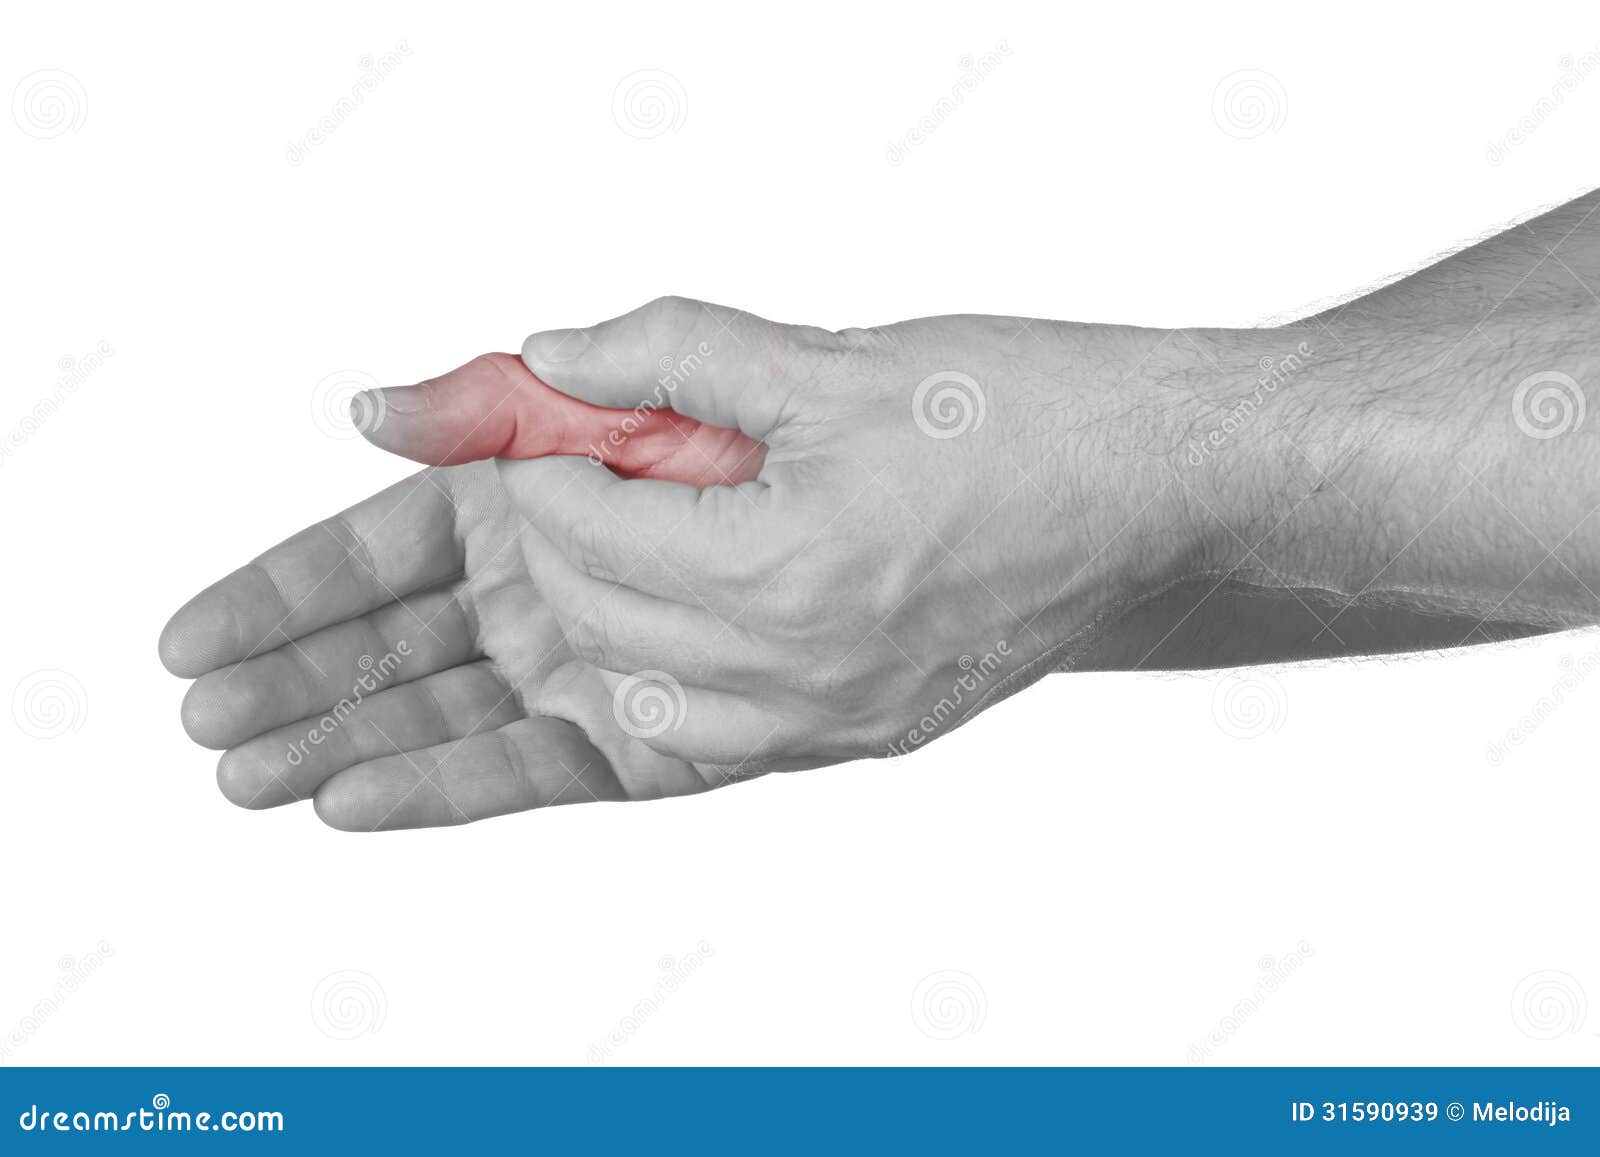 Сильно болят пальцы на руках. Сустав большого пальца руки. Боль в суставе большого пальца руки. Болит сустав большого пальца на руке. Болит сустав Болшево пальца на руке.